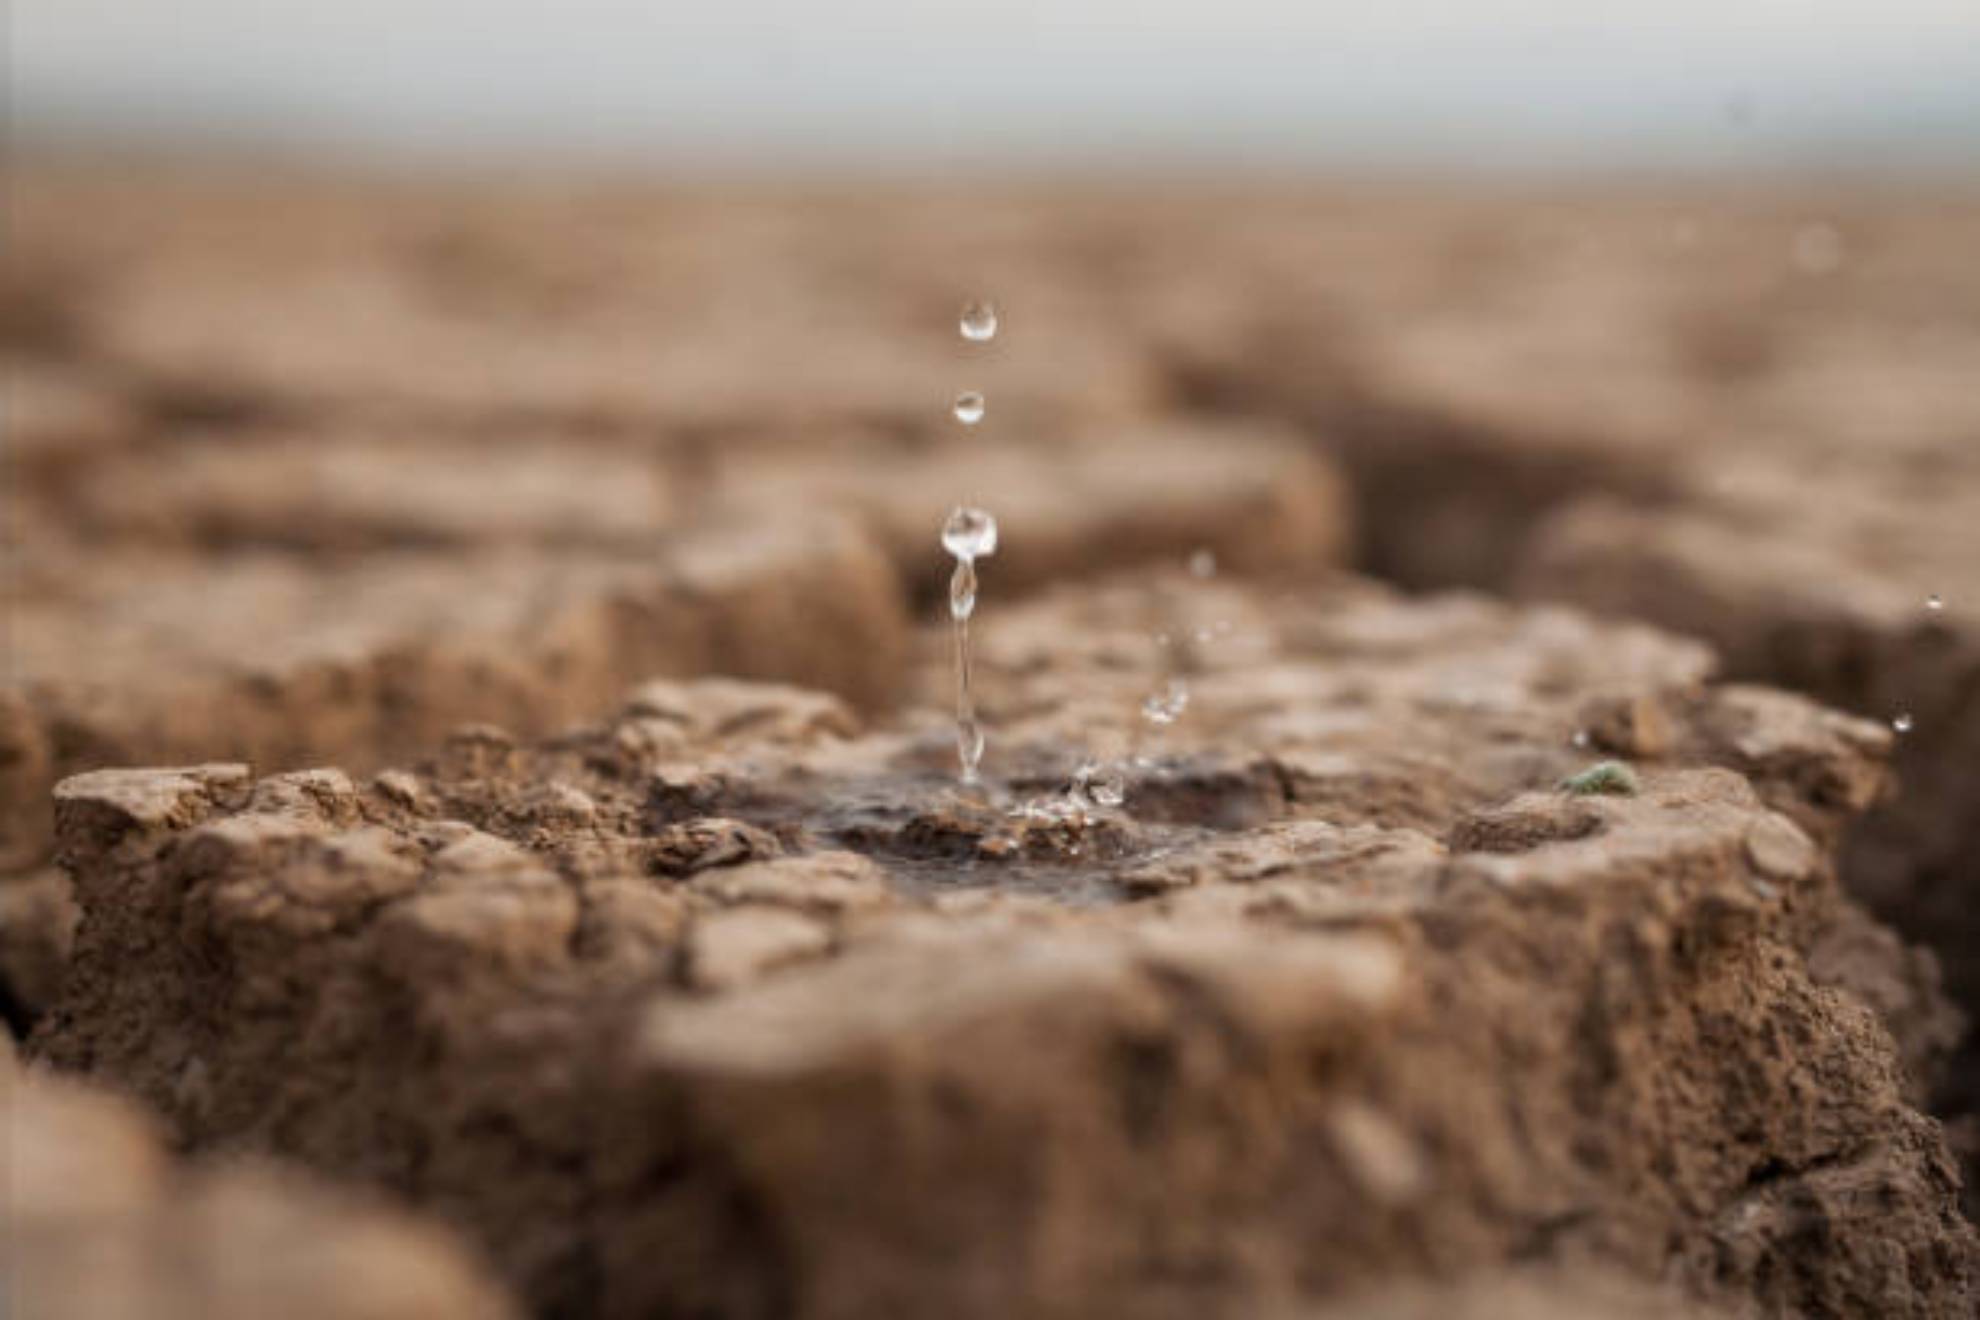 Embalses en Catalunya hoy, 30 de abril: Cul es el nivel de los pantanos y el estado de las reservas de agua hoy